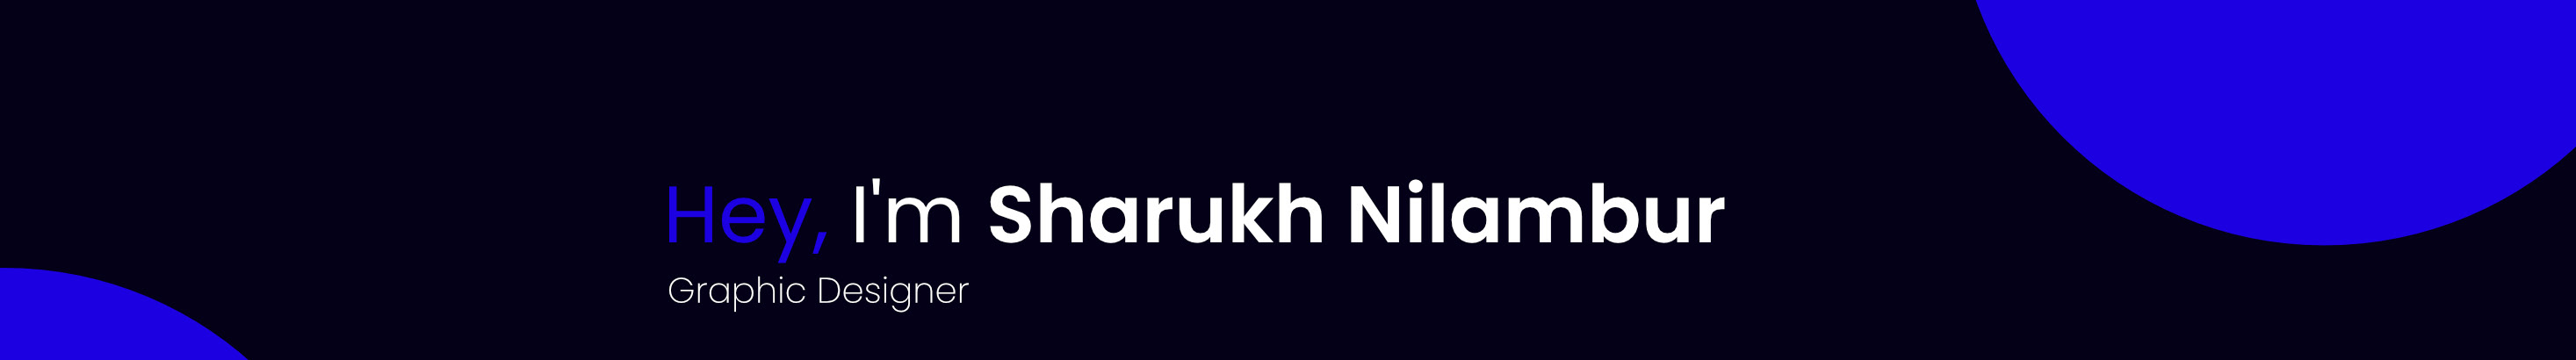 Sharukh Nilambur's profile banner